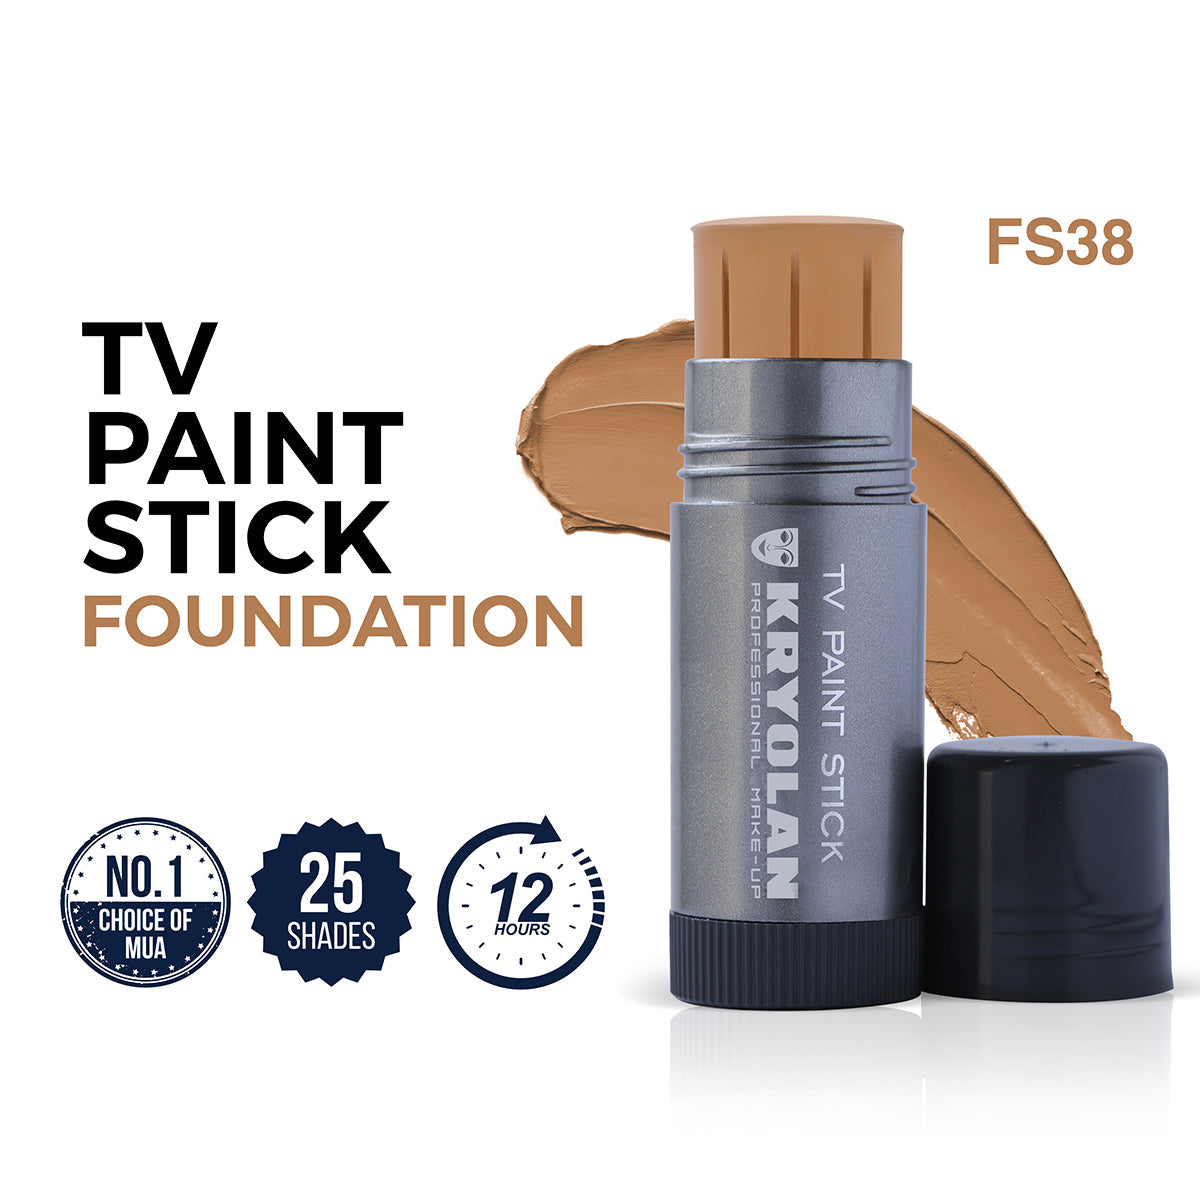 Kryolan TV Paintstick FS38 – AMR Hair & Beauty